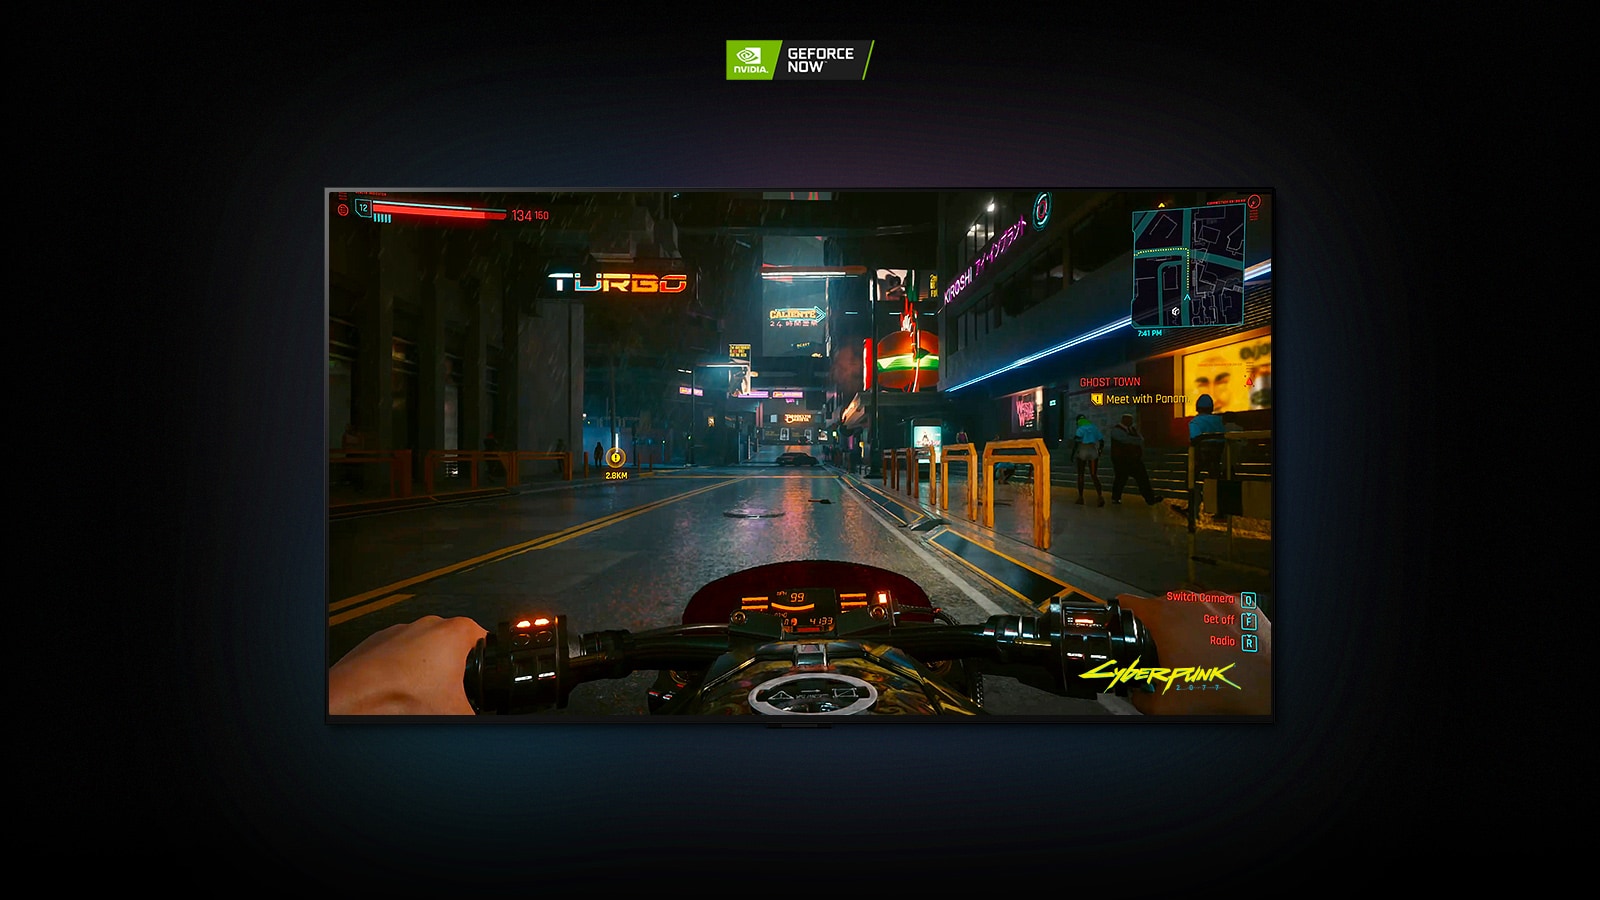 Az LG OLED kijelzőn a Cyberpunk 2077 jelenete látható, melyben a játékos egy neonfényekkel megvilágított utcán halad motorral.